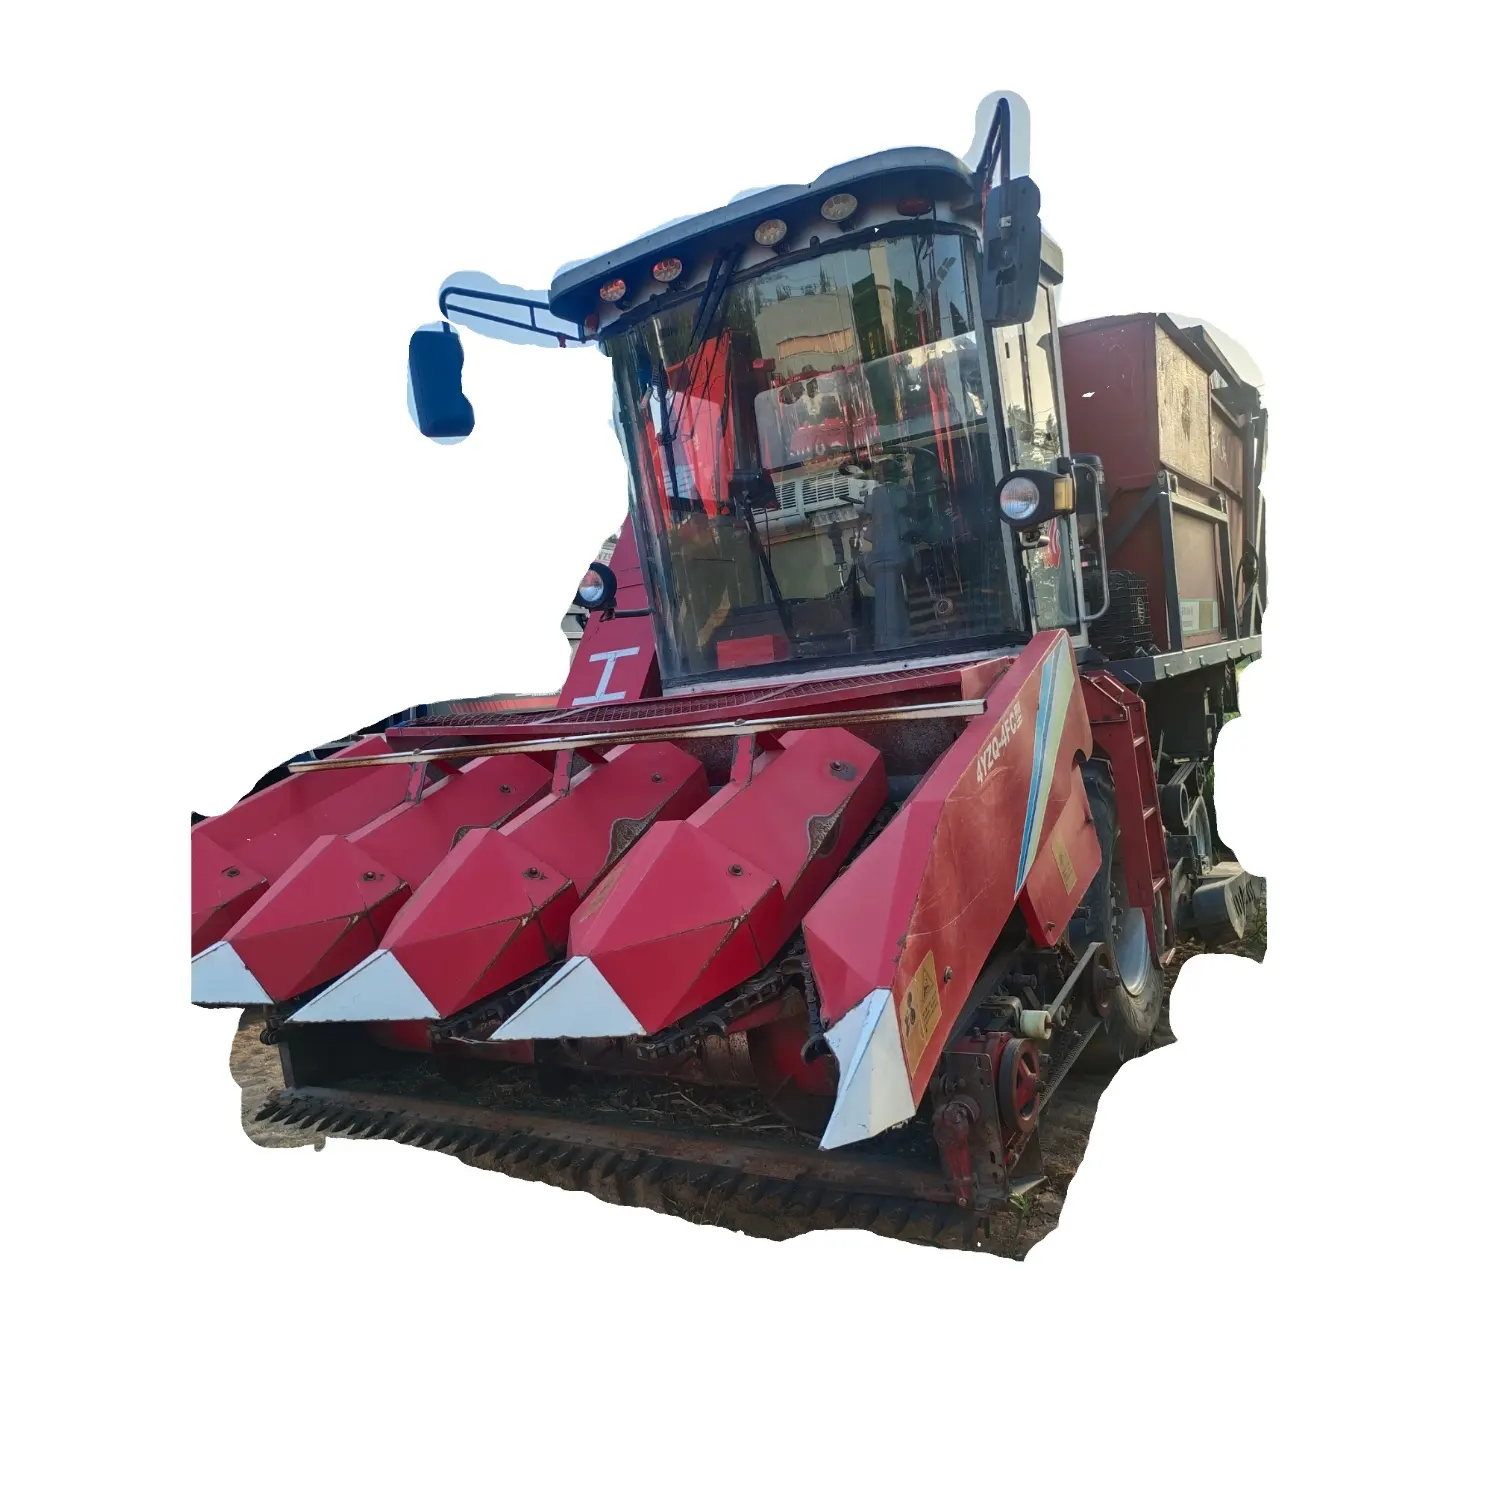 اشترِ آلة حصاد مُدمجة رخيصة لمزارع الأرز، ماكينة زراعية s780، آلة حصاد مُدمجة برأس 14 قدم للبيع في أوروبا